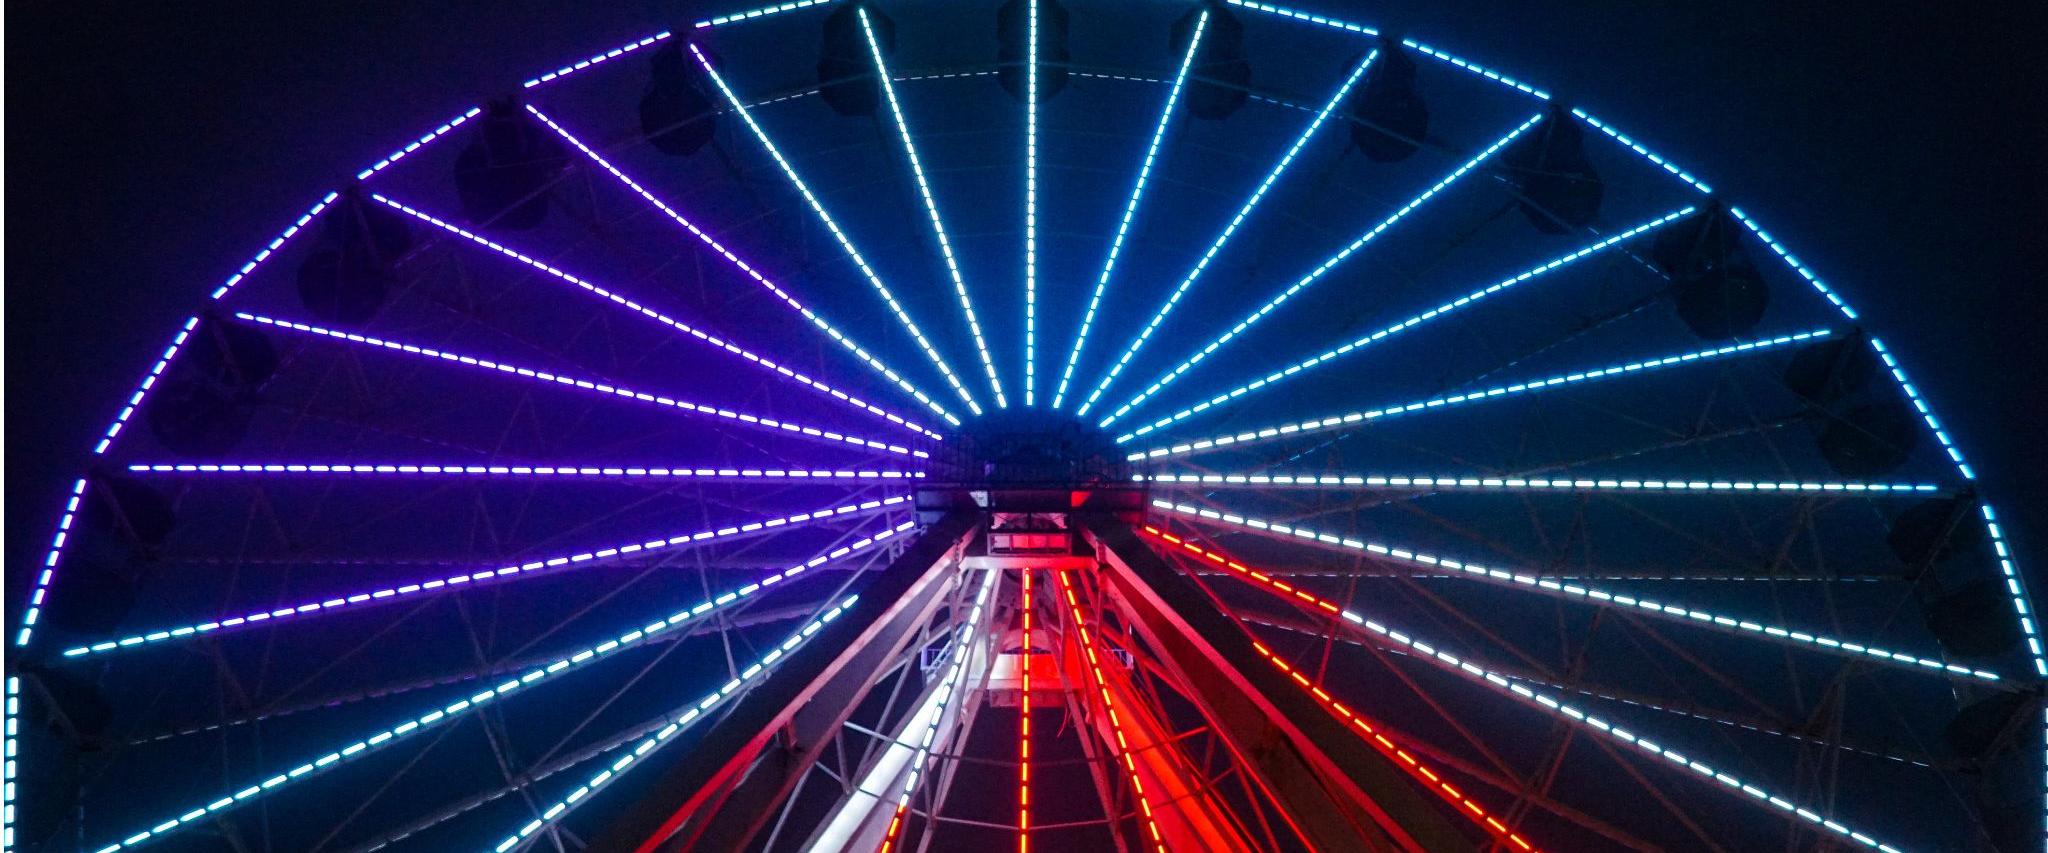 The Wharf Ferris wheel